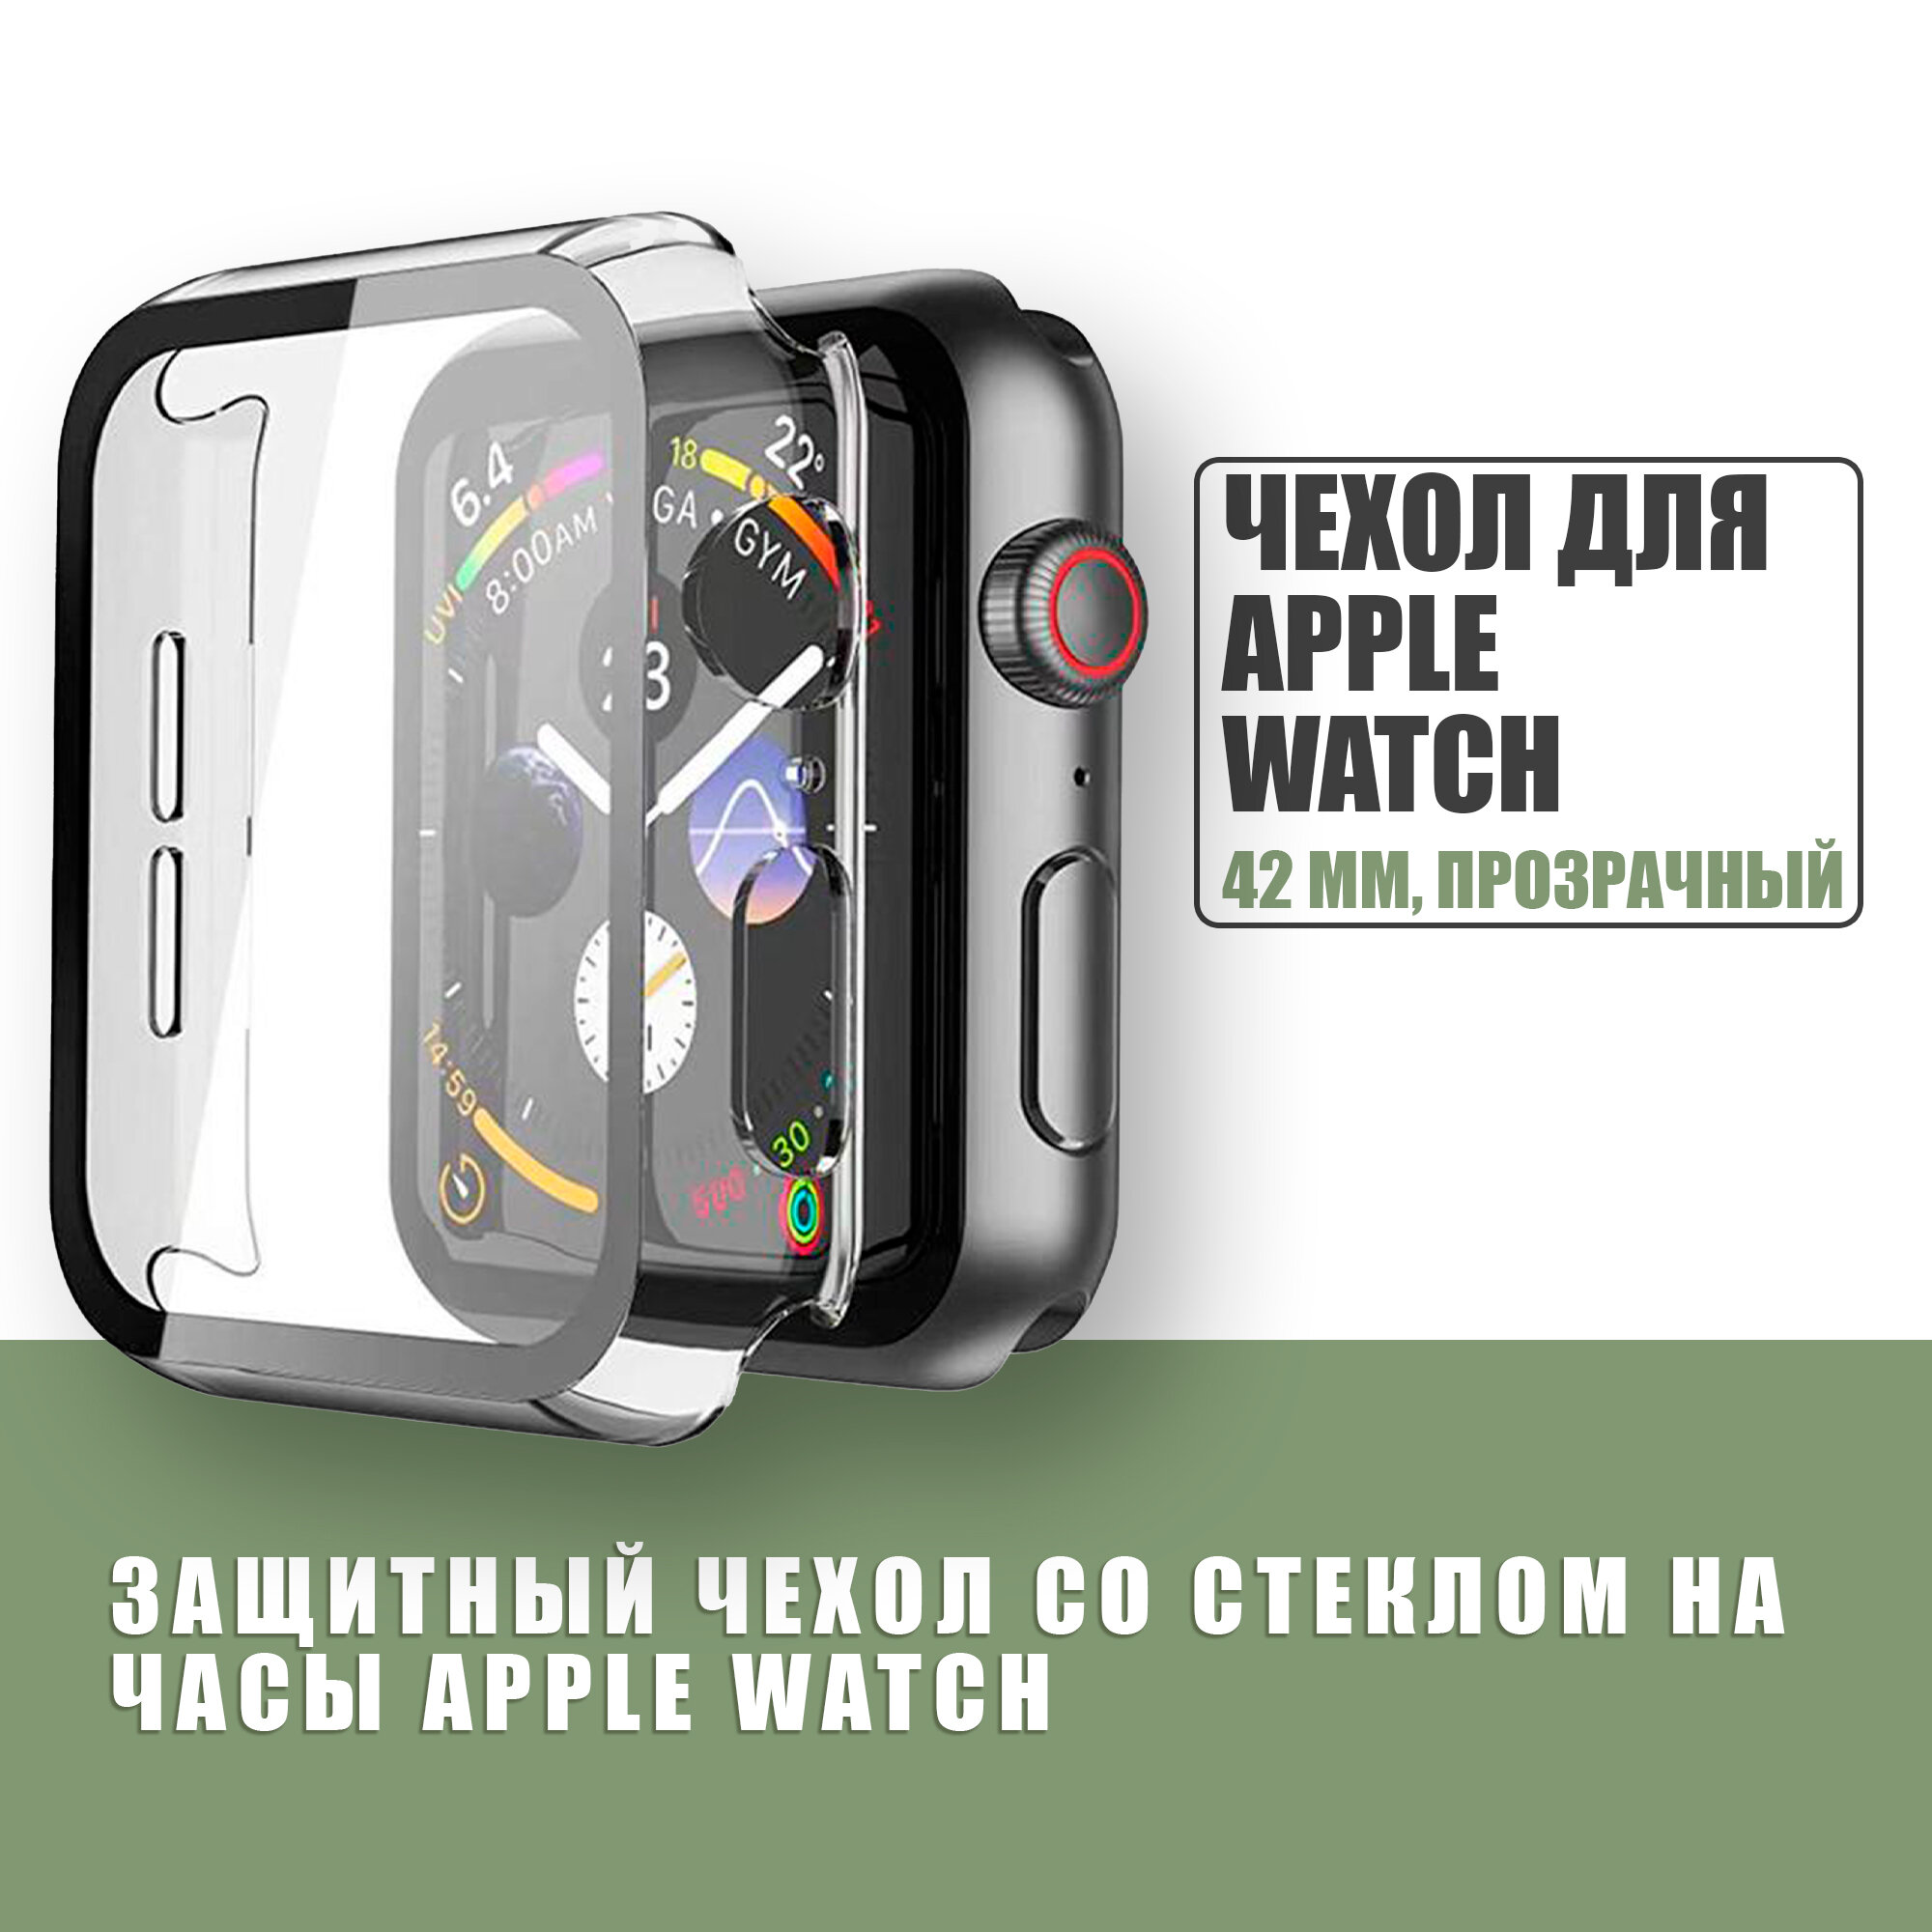 Защитный чехол стекло на часы Apple Watch 42 mm